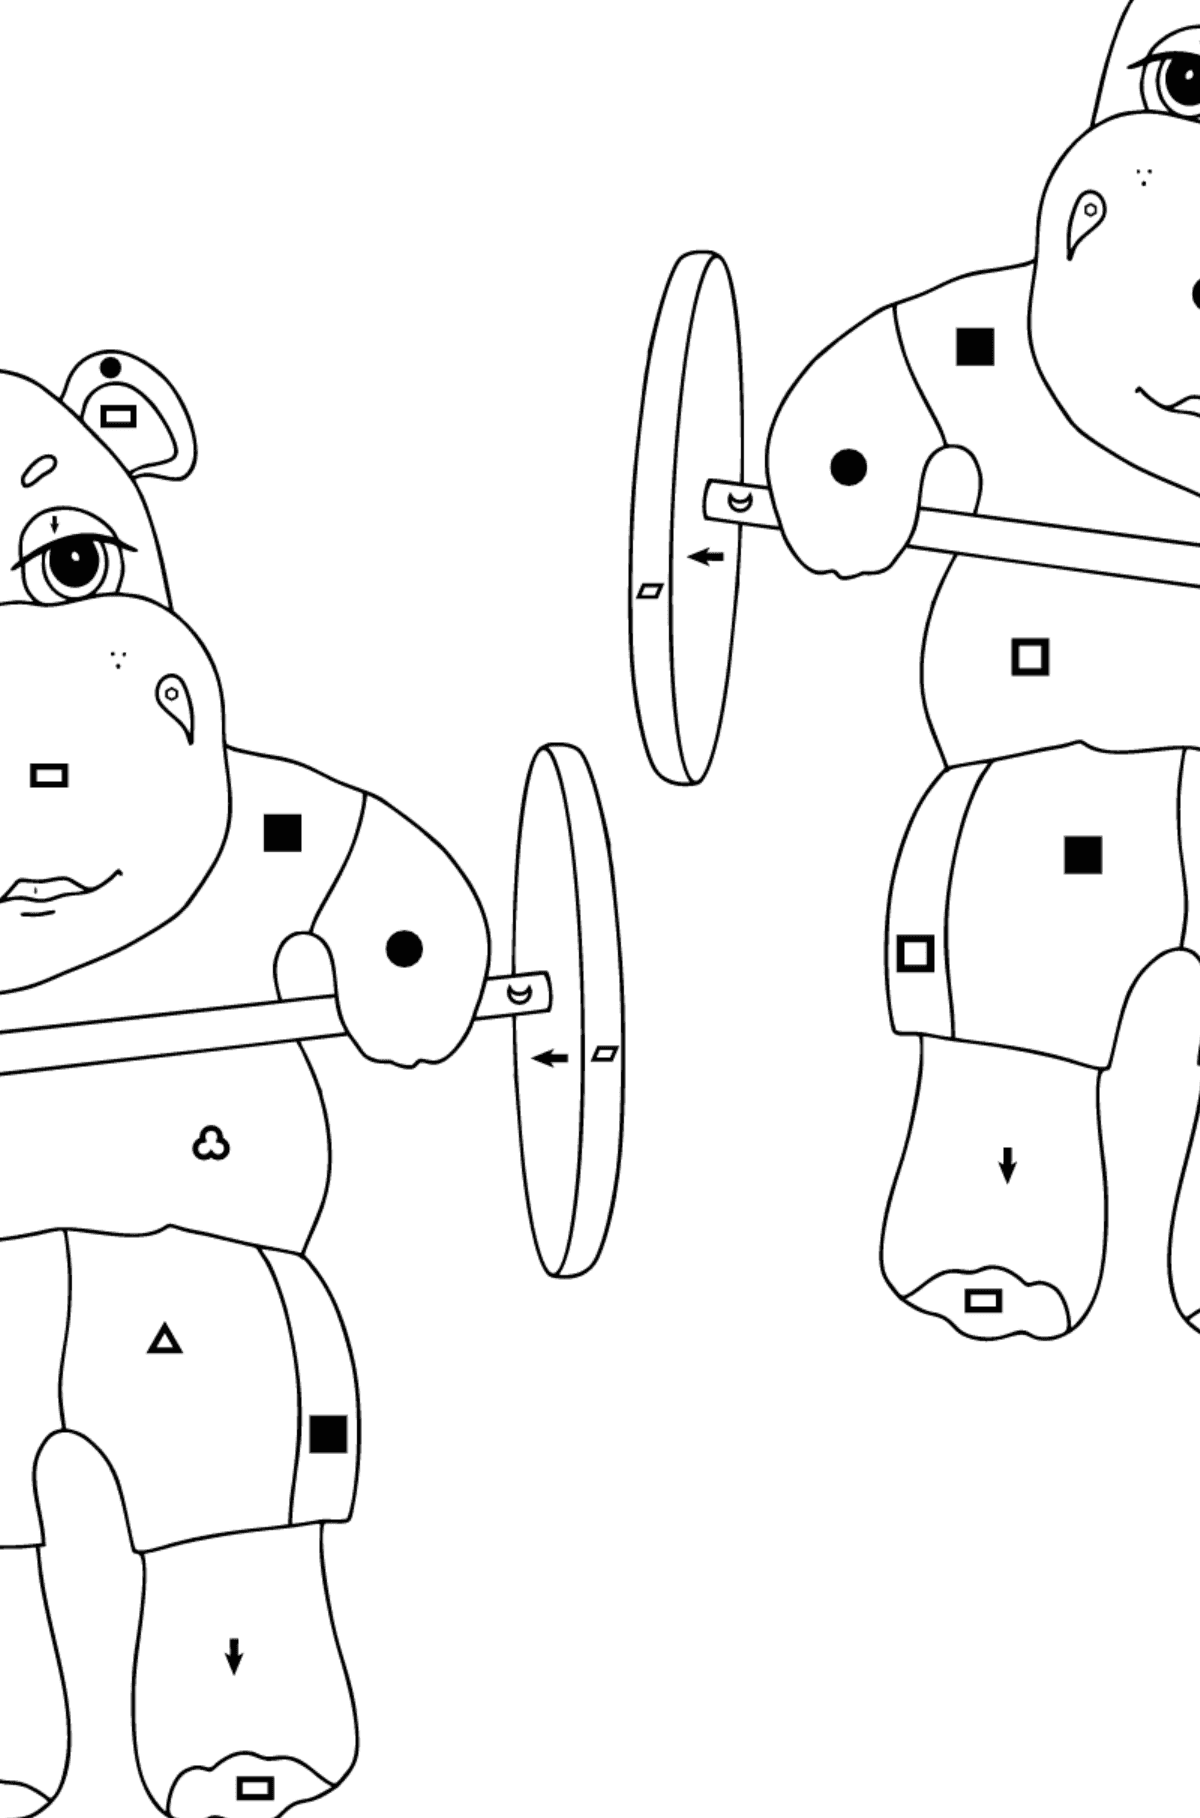 Prosta kolorystyka Hipopotamów - Kolorowanie według symboli i figur geometrycznych dla dzieci